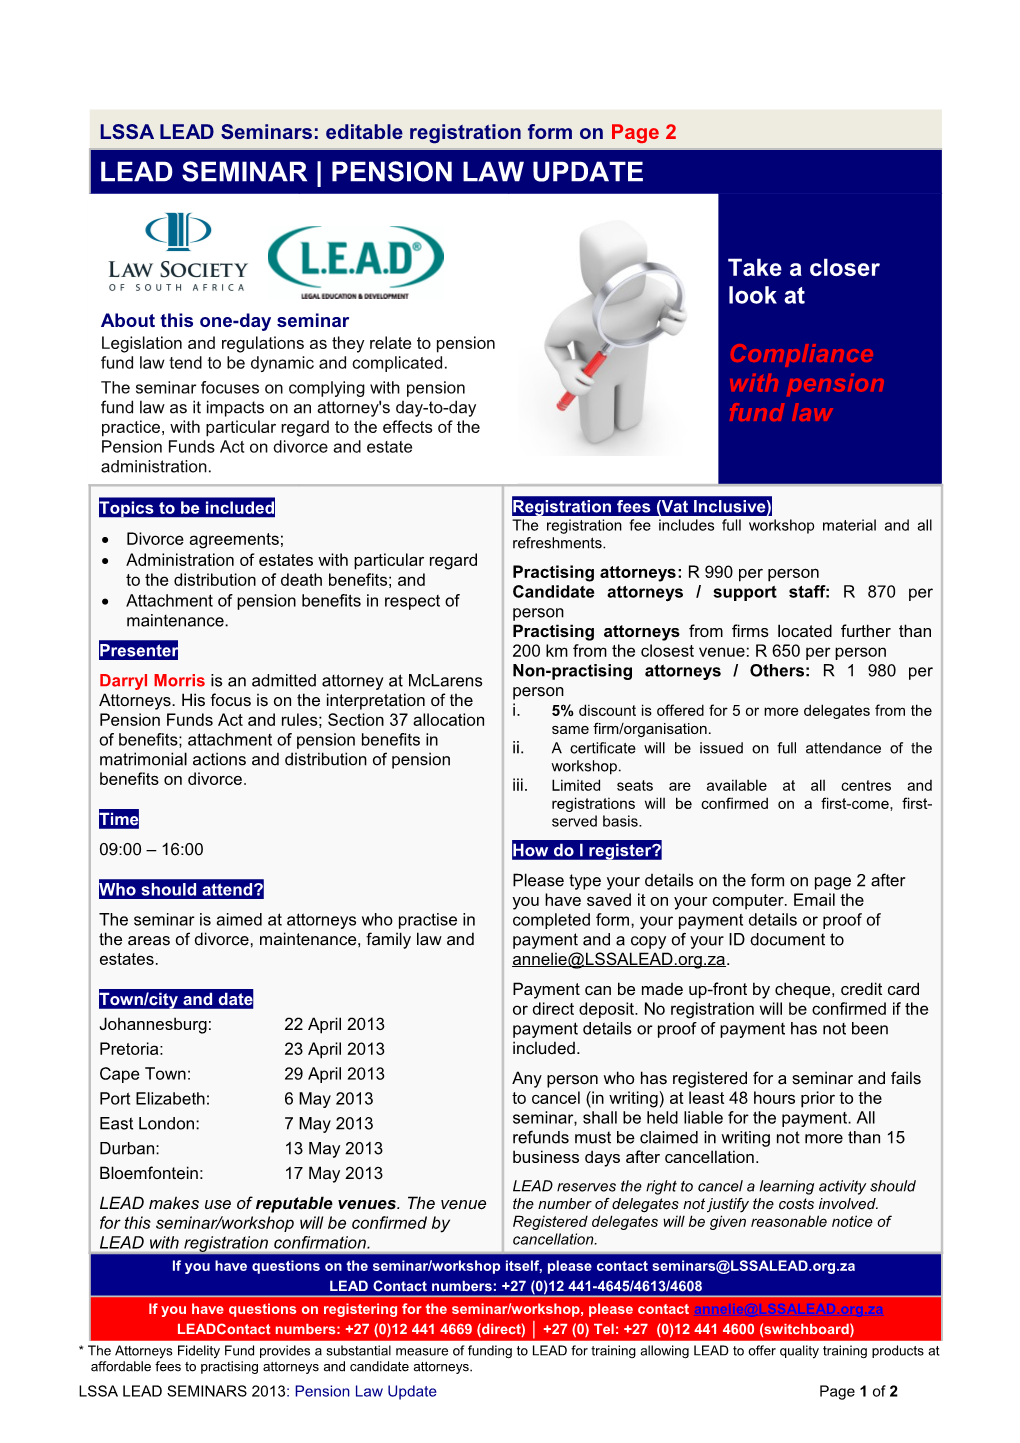 LSSA LEAD Seminars: Editable Registration Form Onpage 2